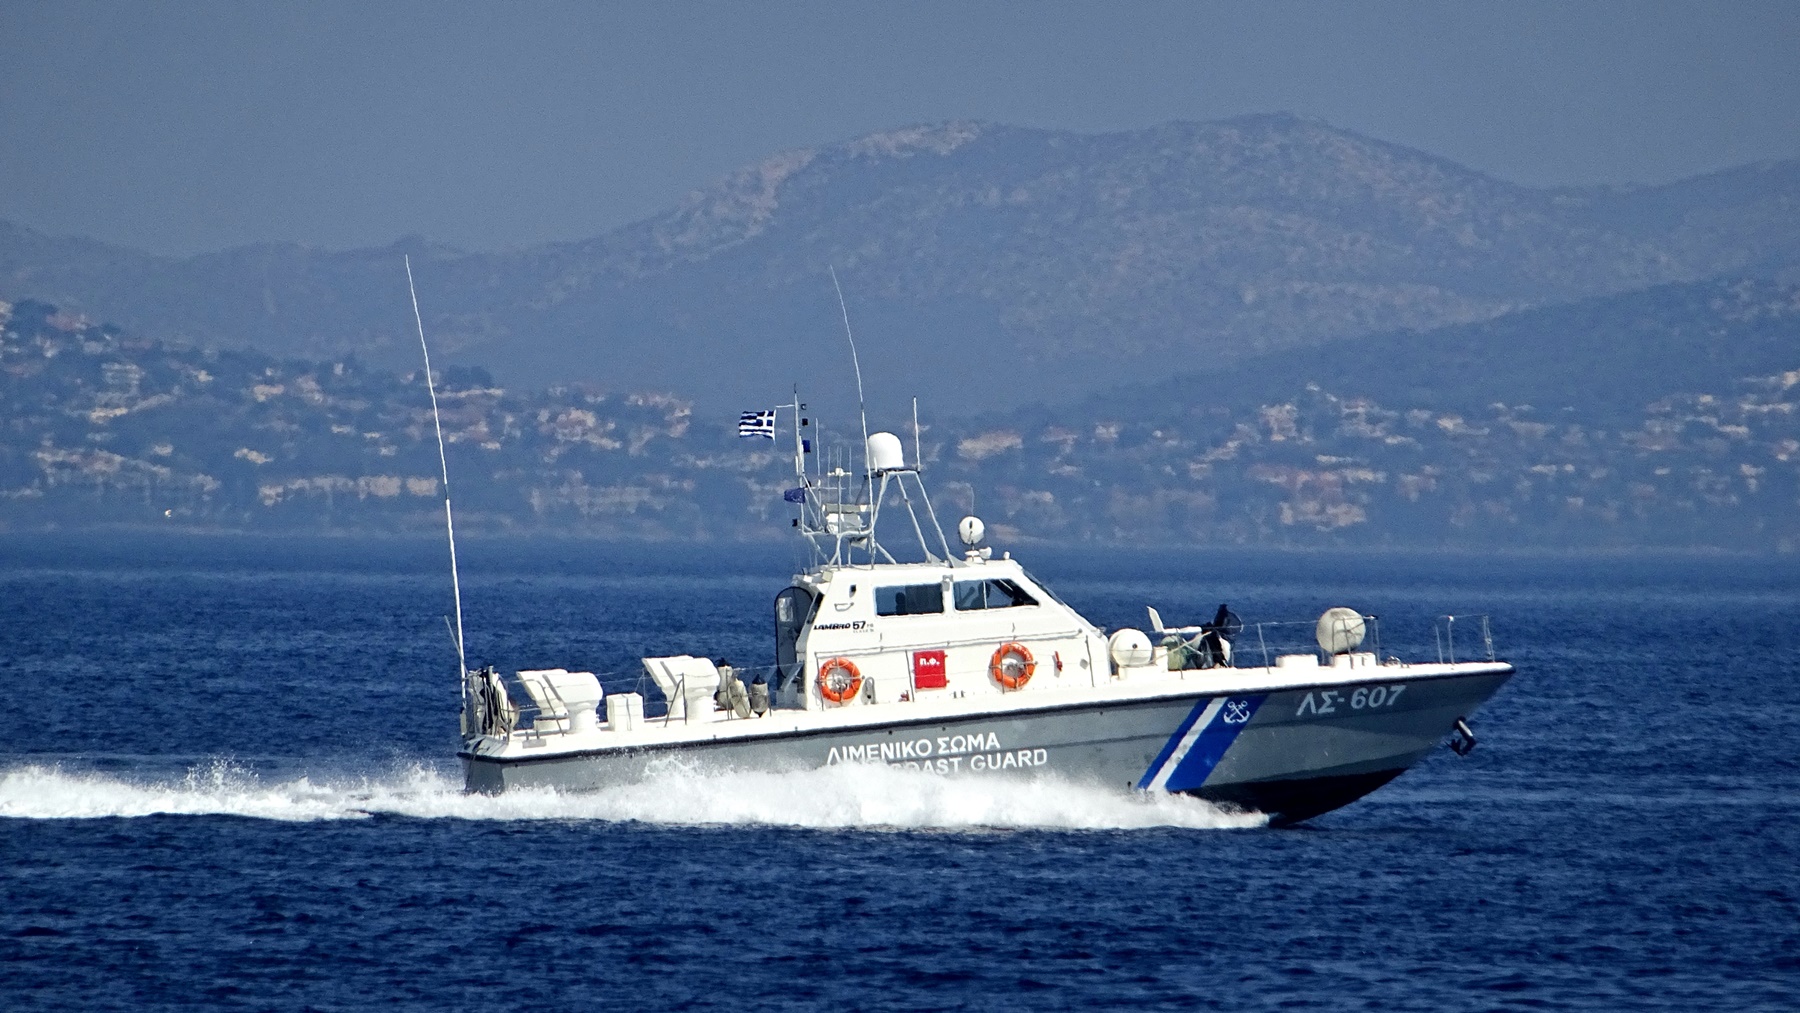 Λιμενικό σώμα: «Ναυμαχία» ανοιχτά της Ρόδου ανάμεσα σε περιπολικό σκάφος και διακινητές